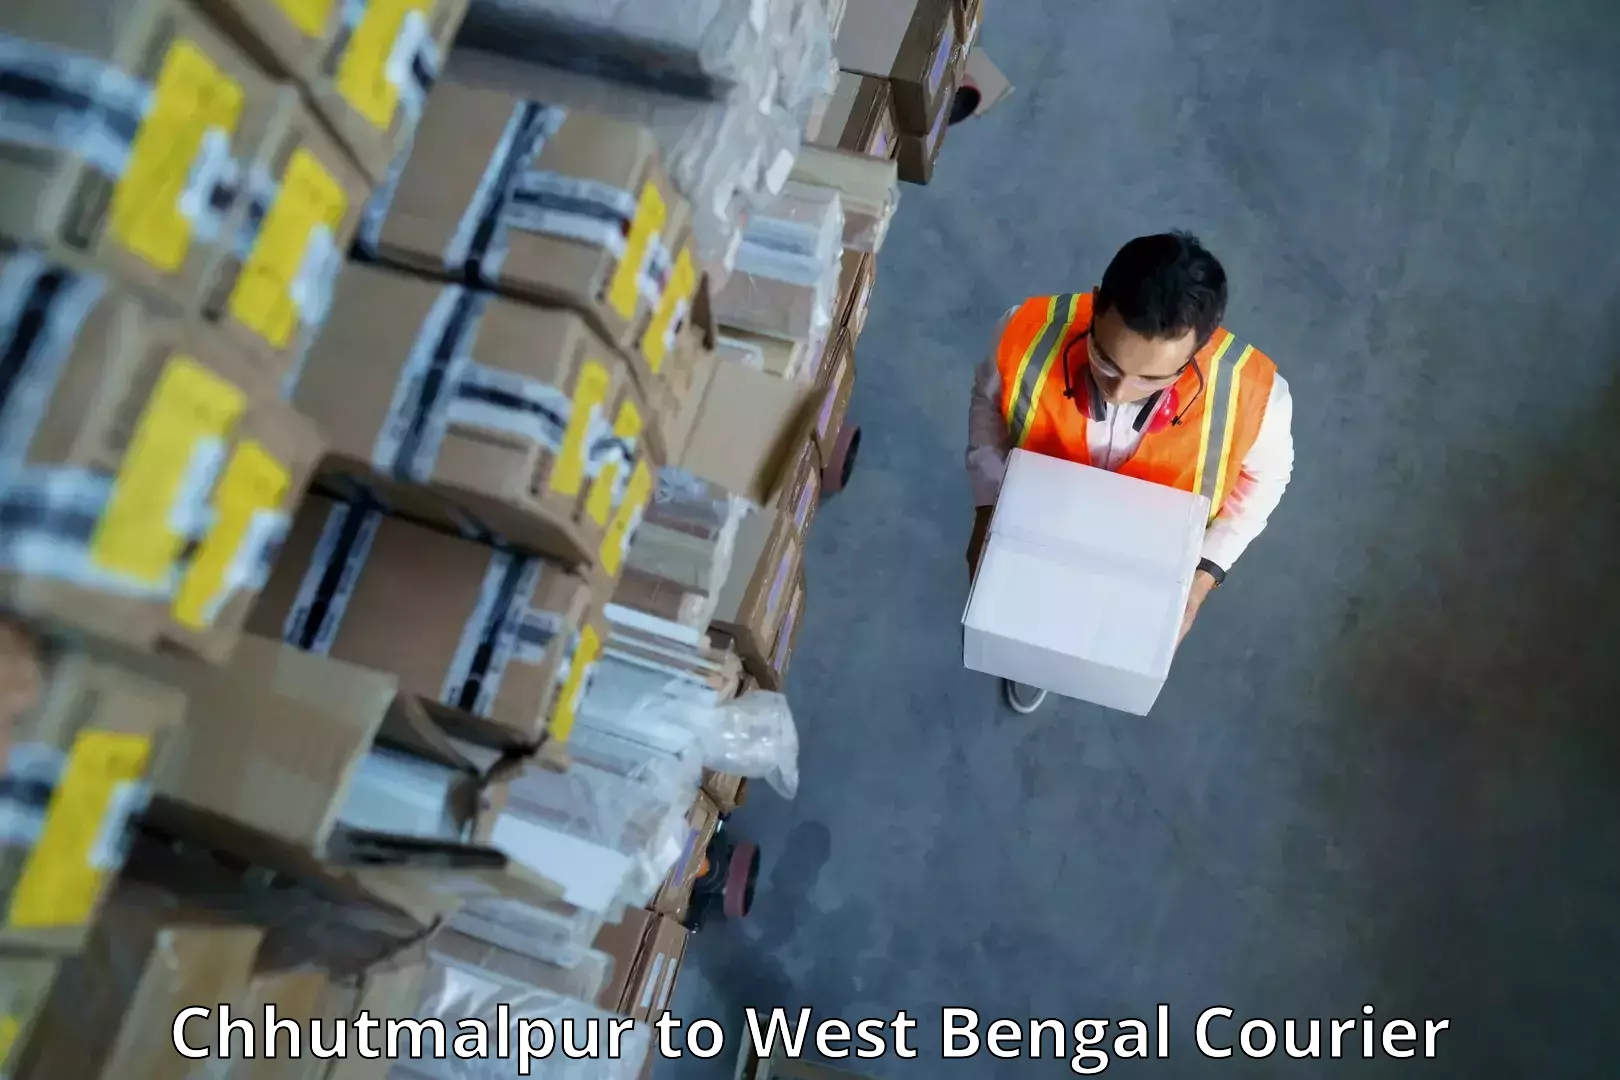 Cargo courier service Chhutmalpur to Swarupnagar